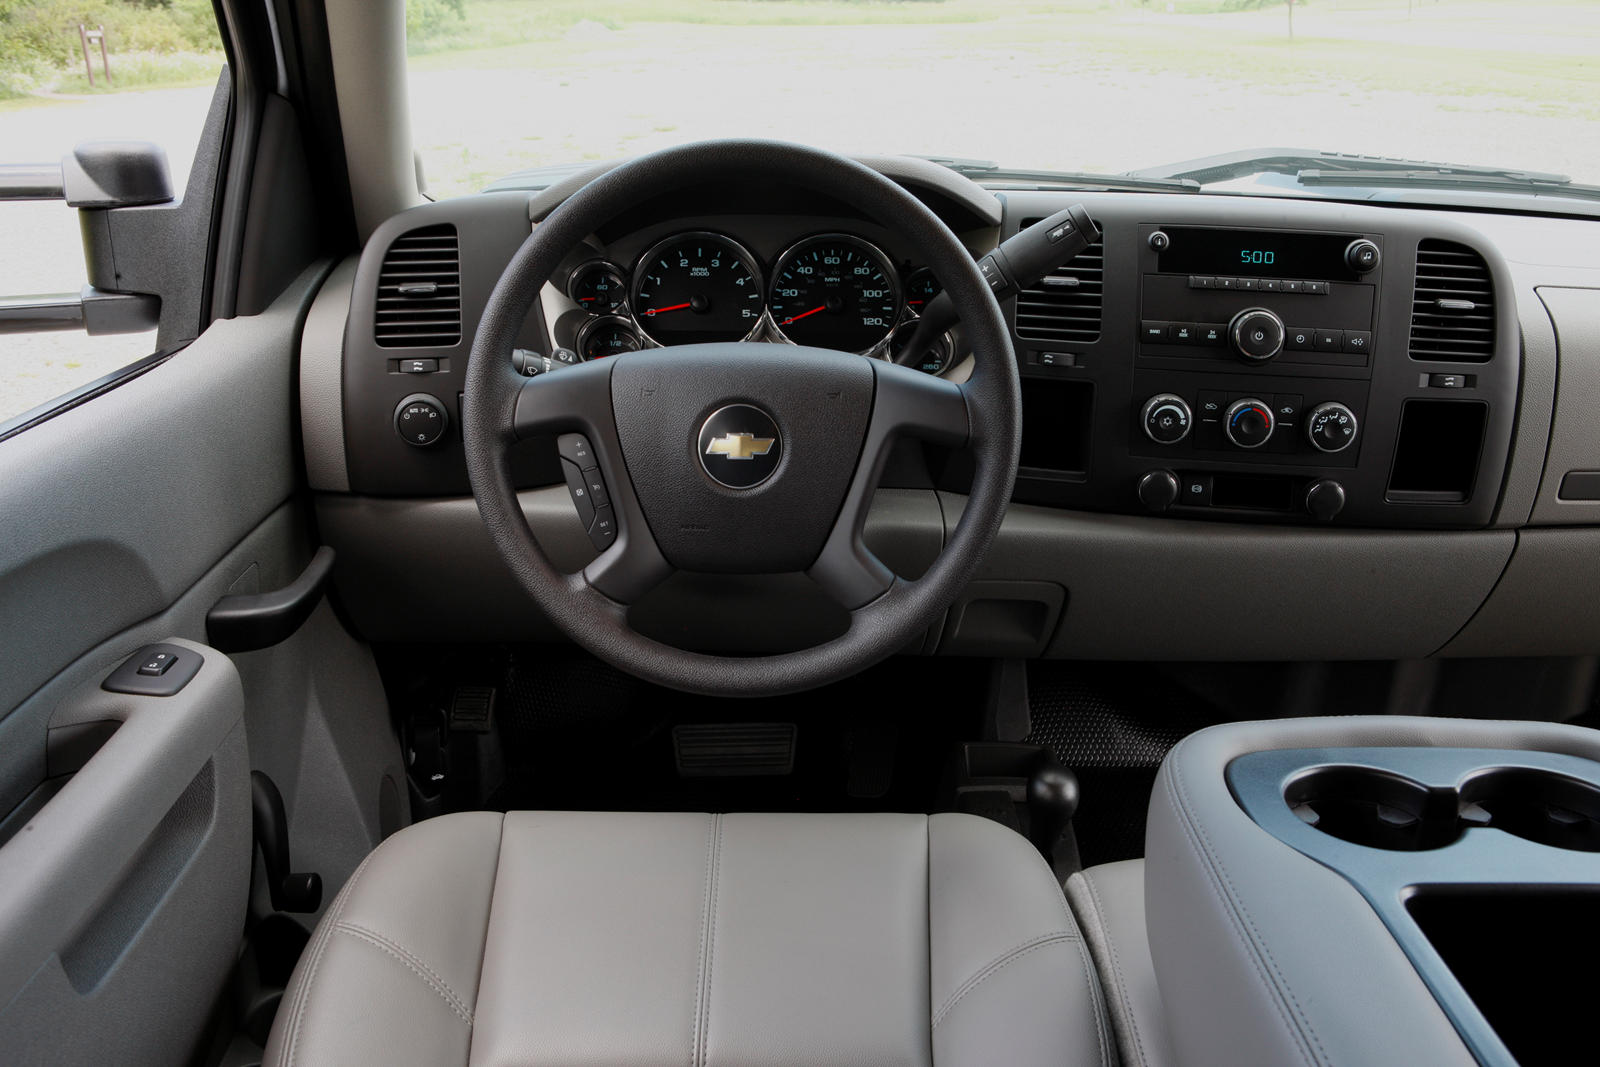 2009 Chevrolet Silverado 2500HD Steering Wheel